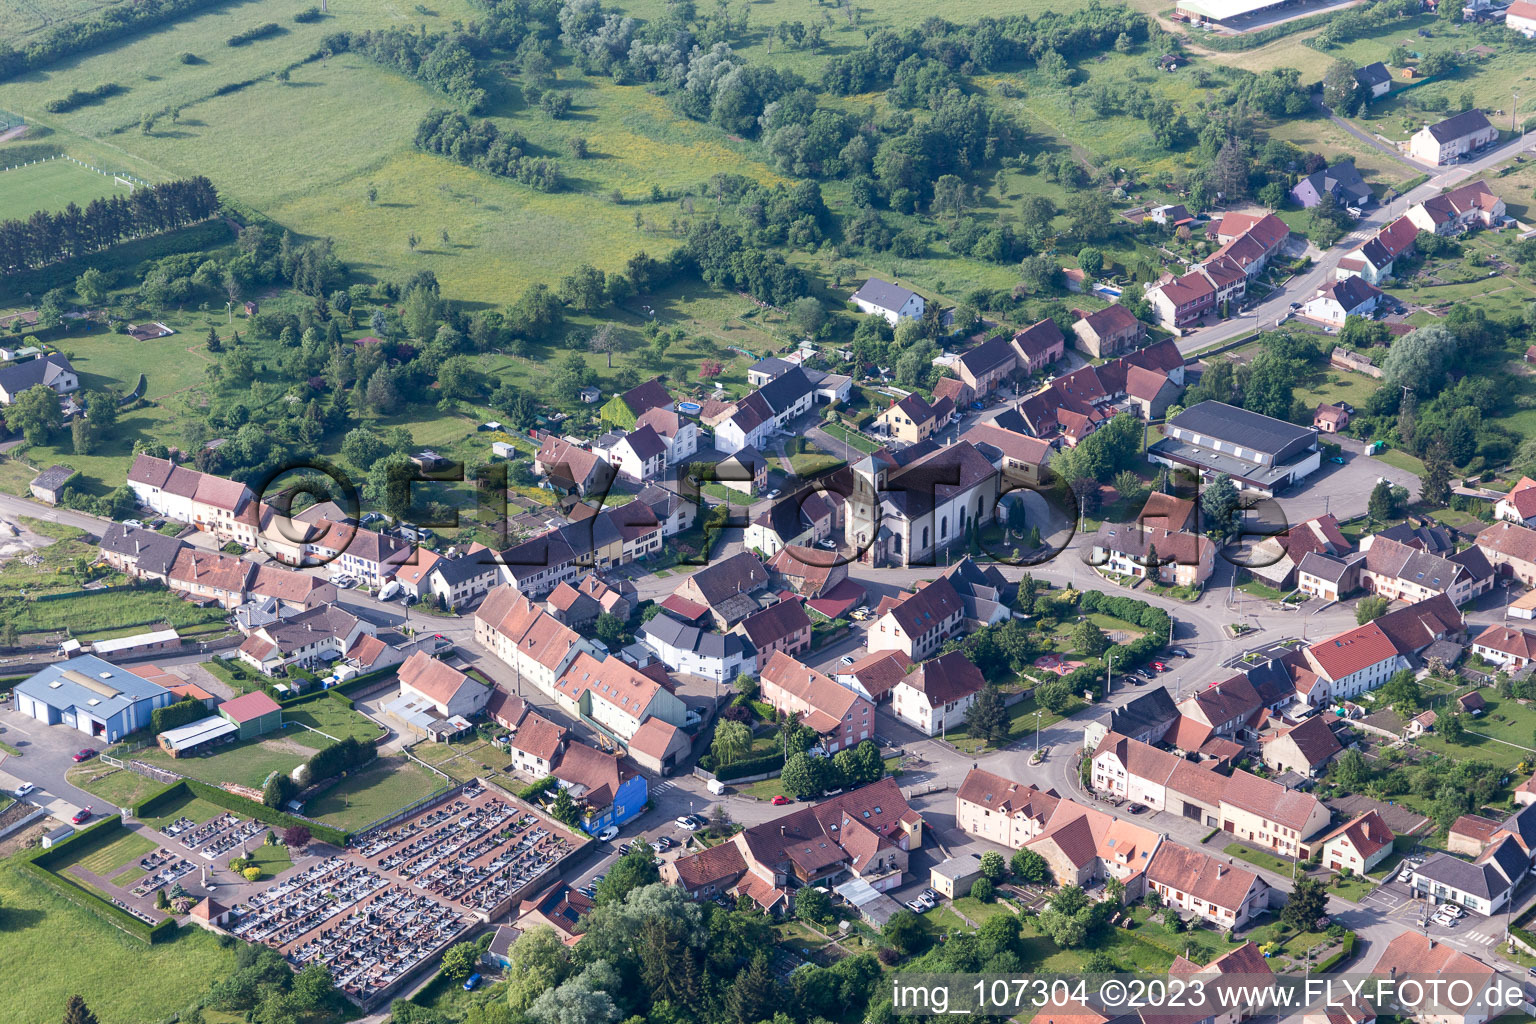 Vue aérienne de Wiesviller dans le département Moselle, France